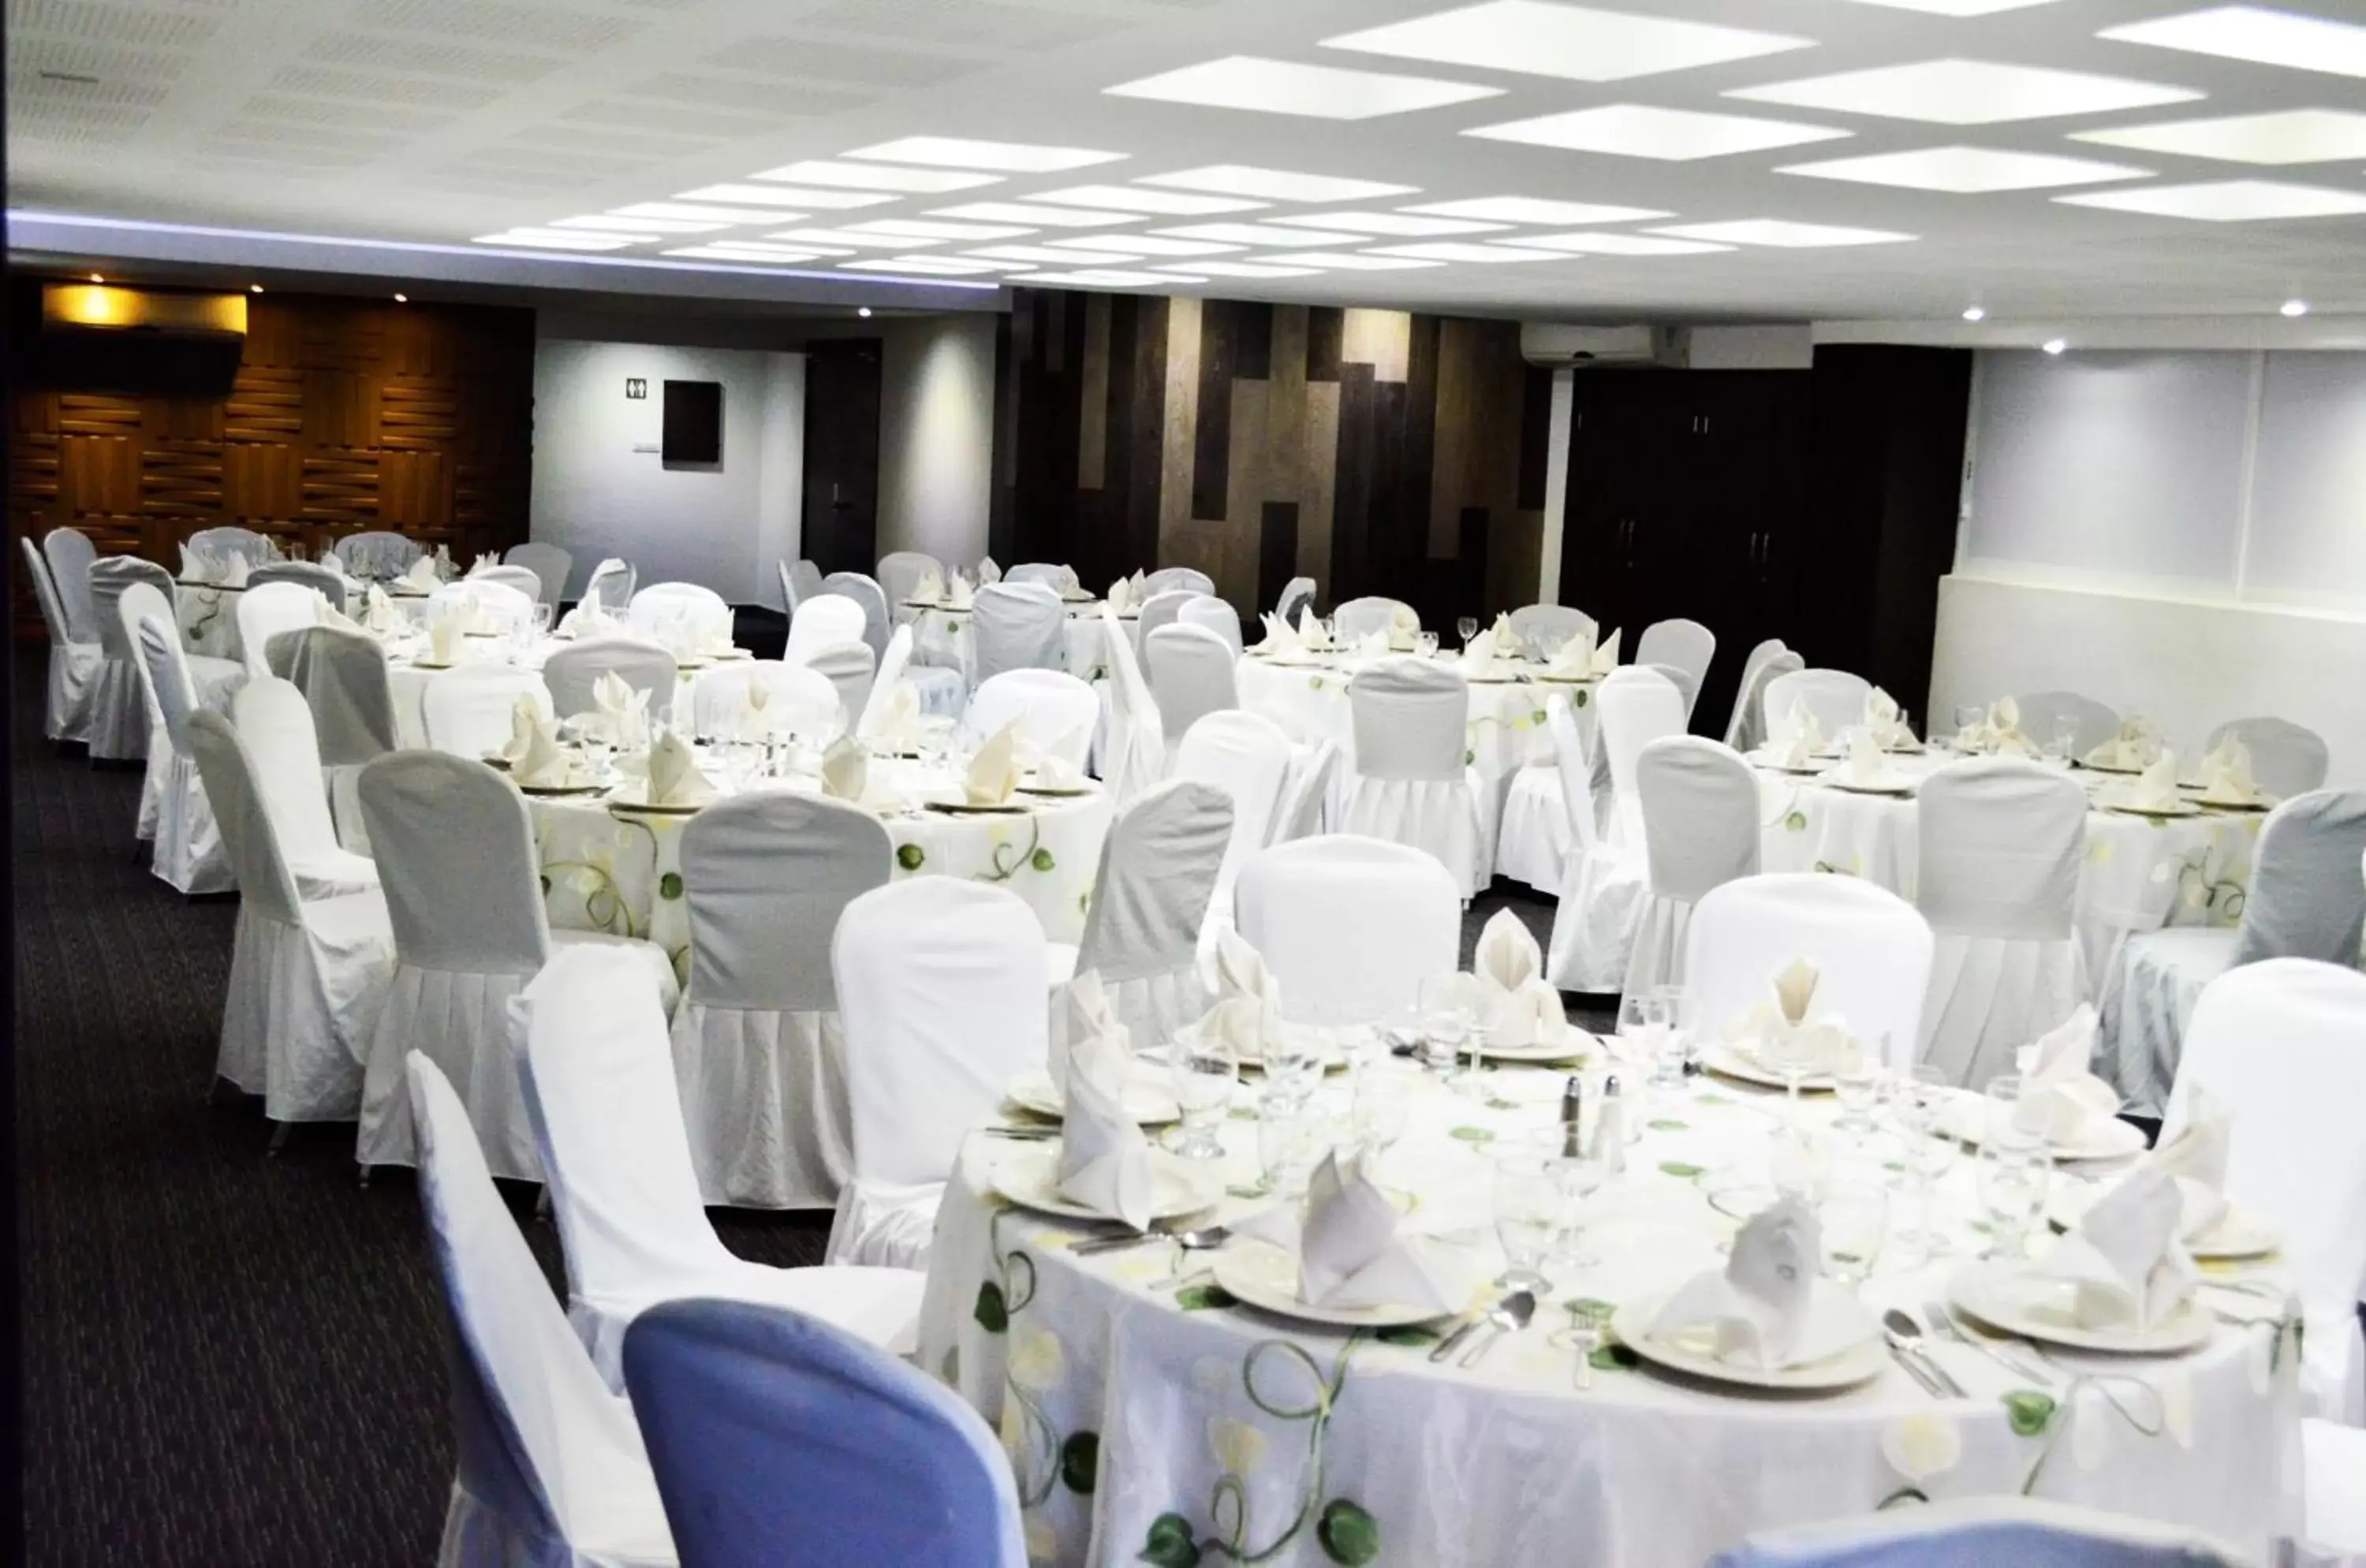 Banquet/Function facilities, Banquet Facilities in LaiLa Hotel CDMX